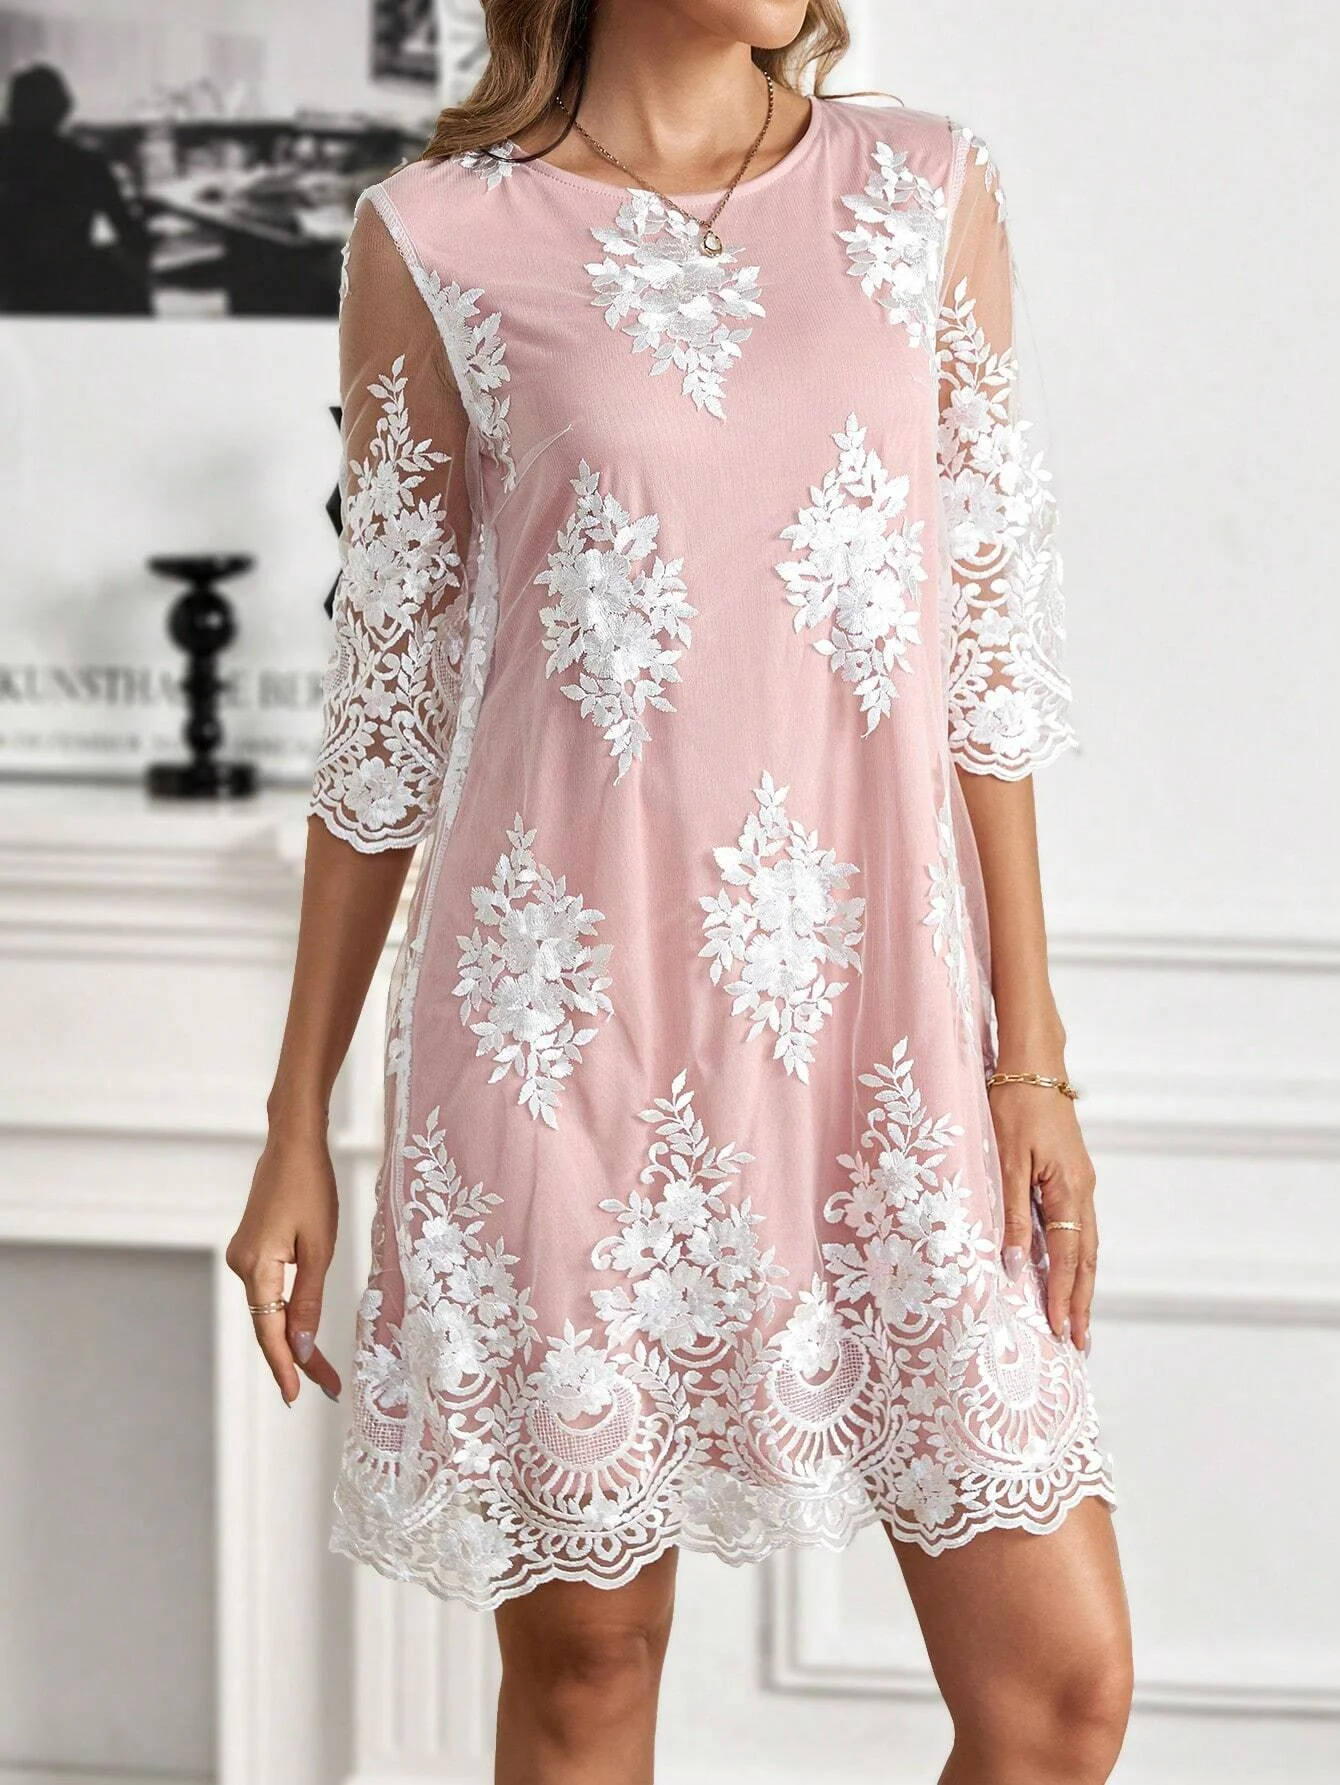 Damen Abendkleid Spitze Stickerei Elegant SommerKleid Weit Party MidiKleid